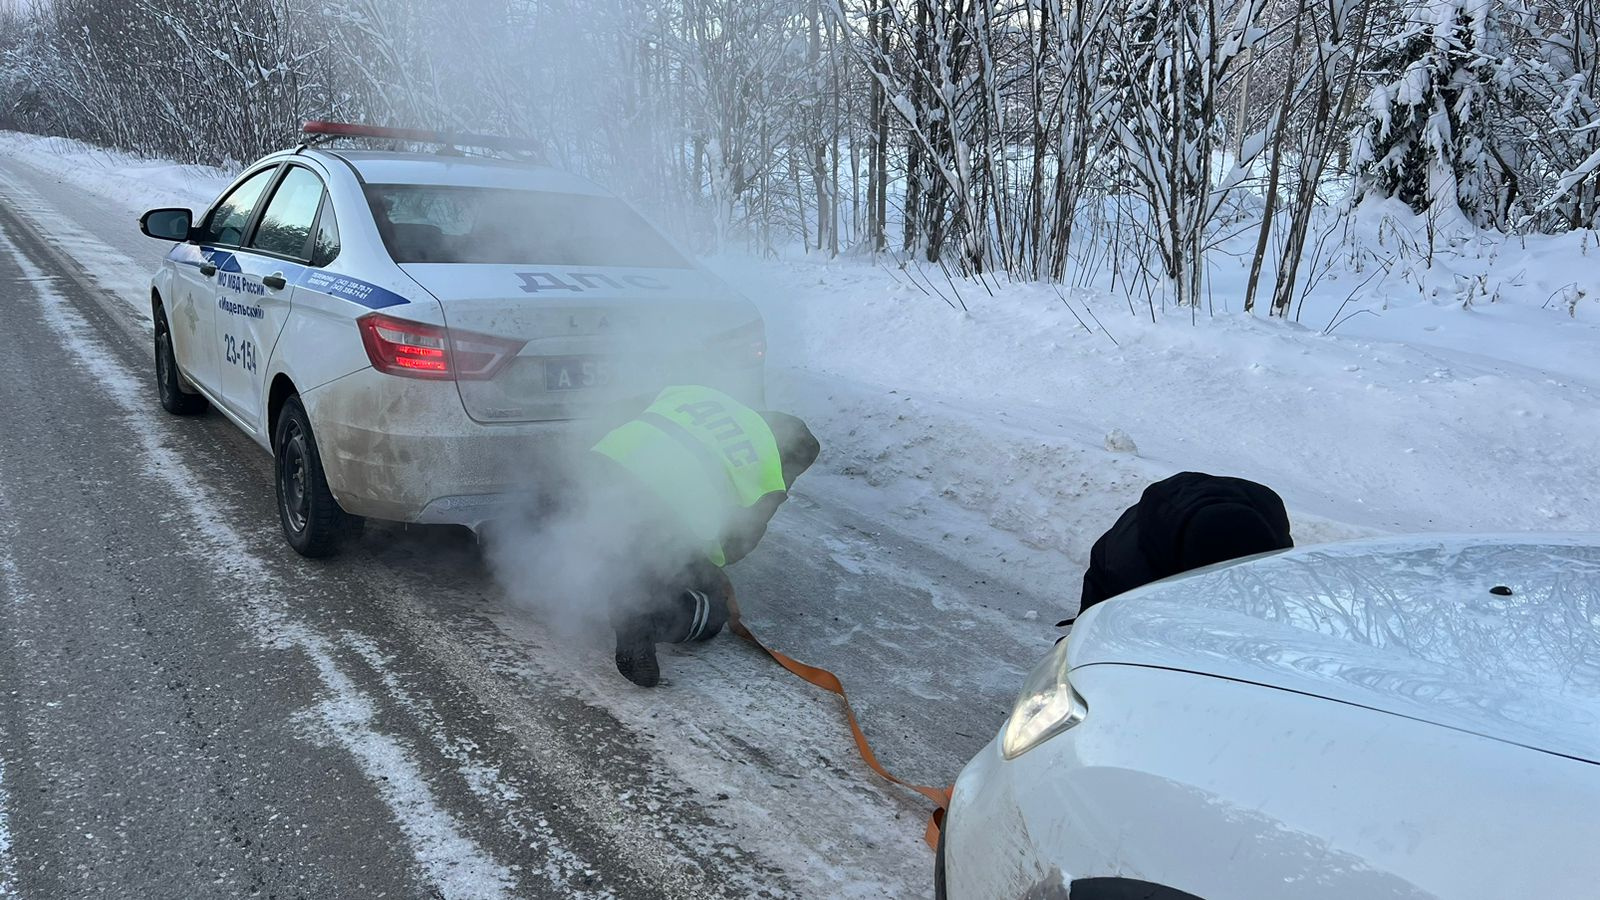 Уралец застрял на дороге в 35-градусный мороз. Добрая история спасения